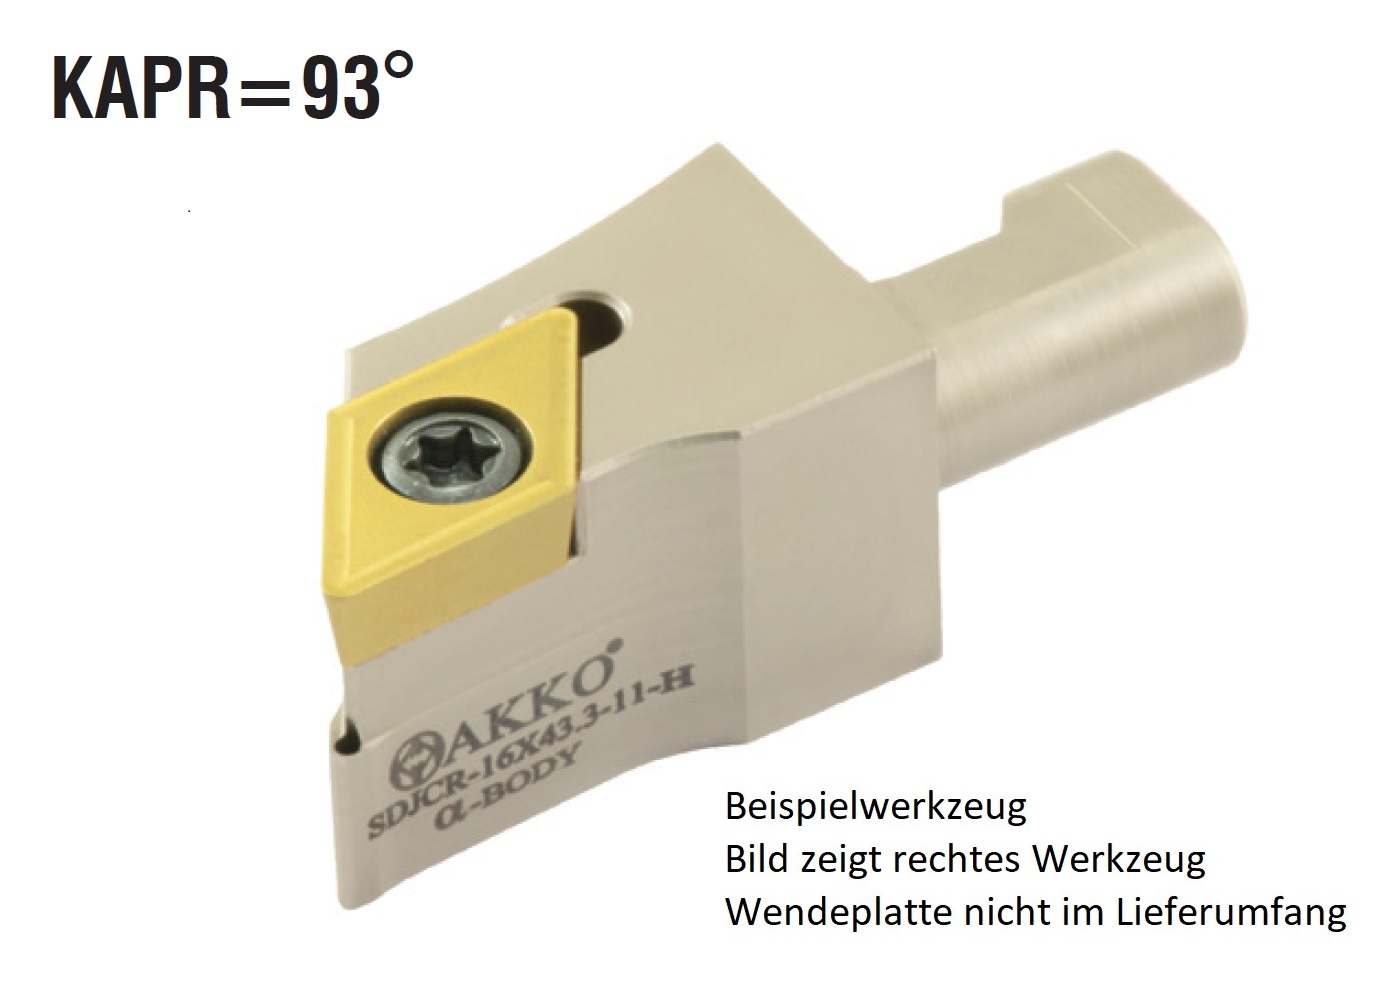 AKKO-Wechselkopf Größe 12 für modulares Langdrehautomaten-Werkzeug SEC-tools
rechts, für ISO-WSP DC.T 11T302, ohne Innenkühlung